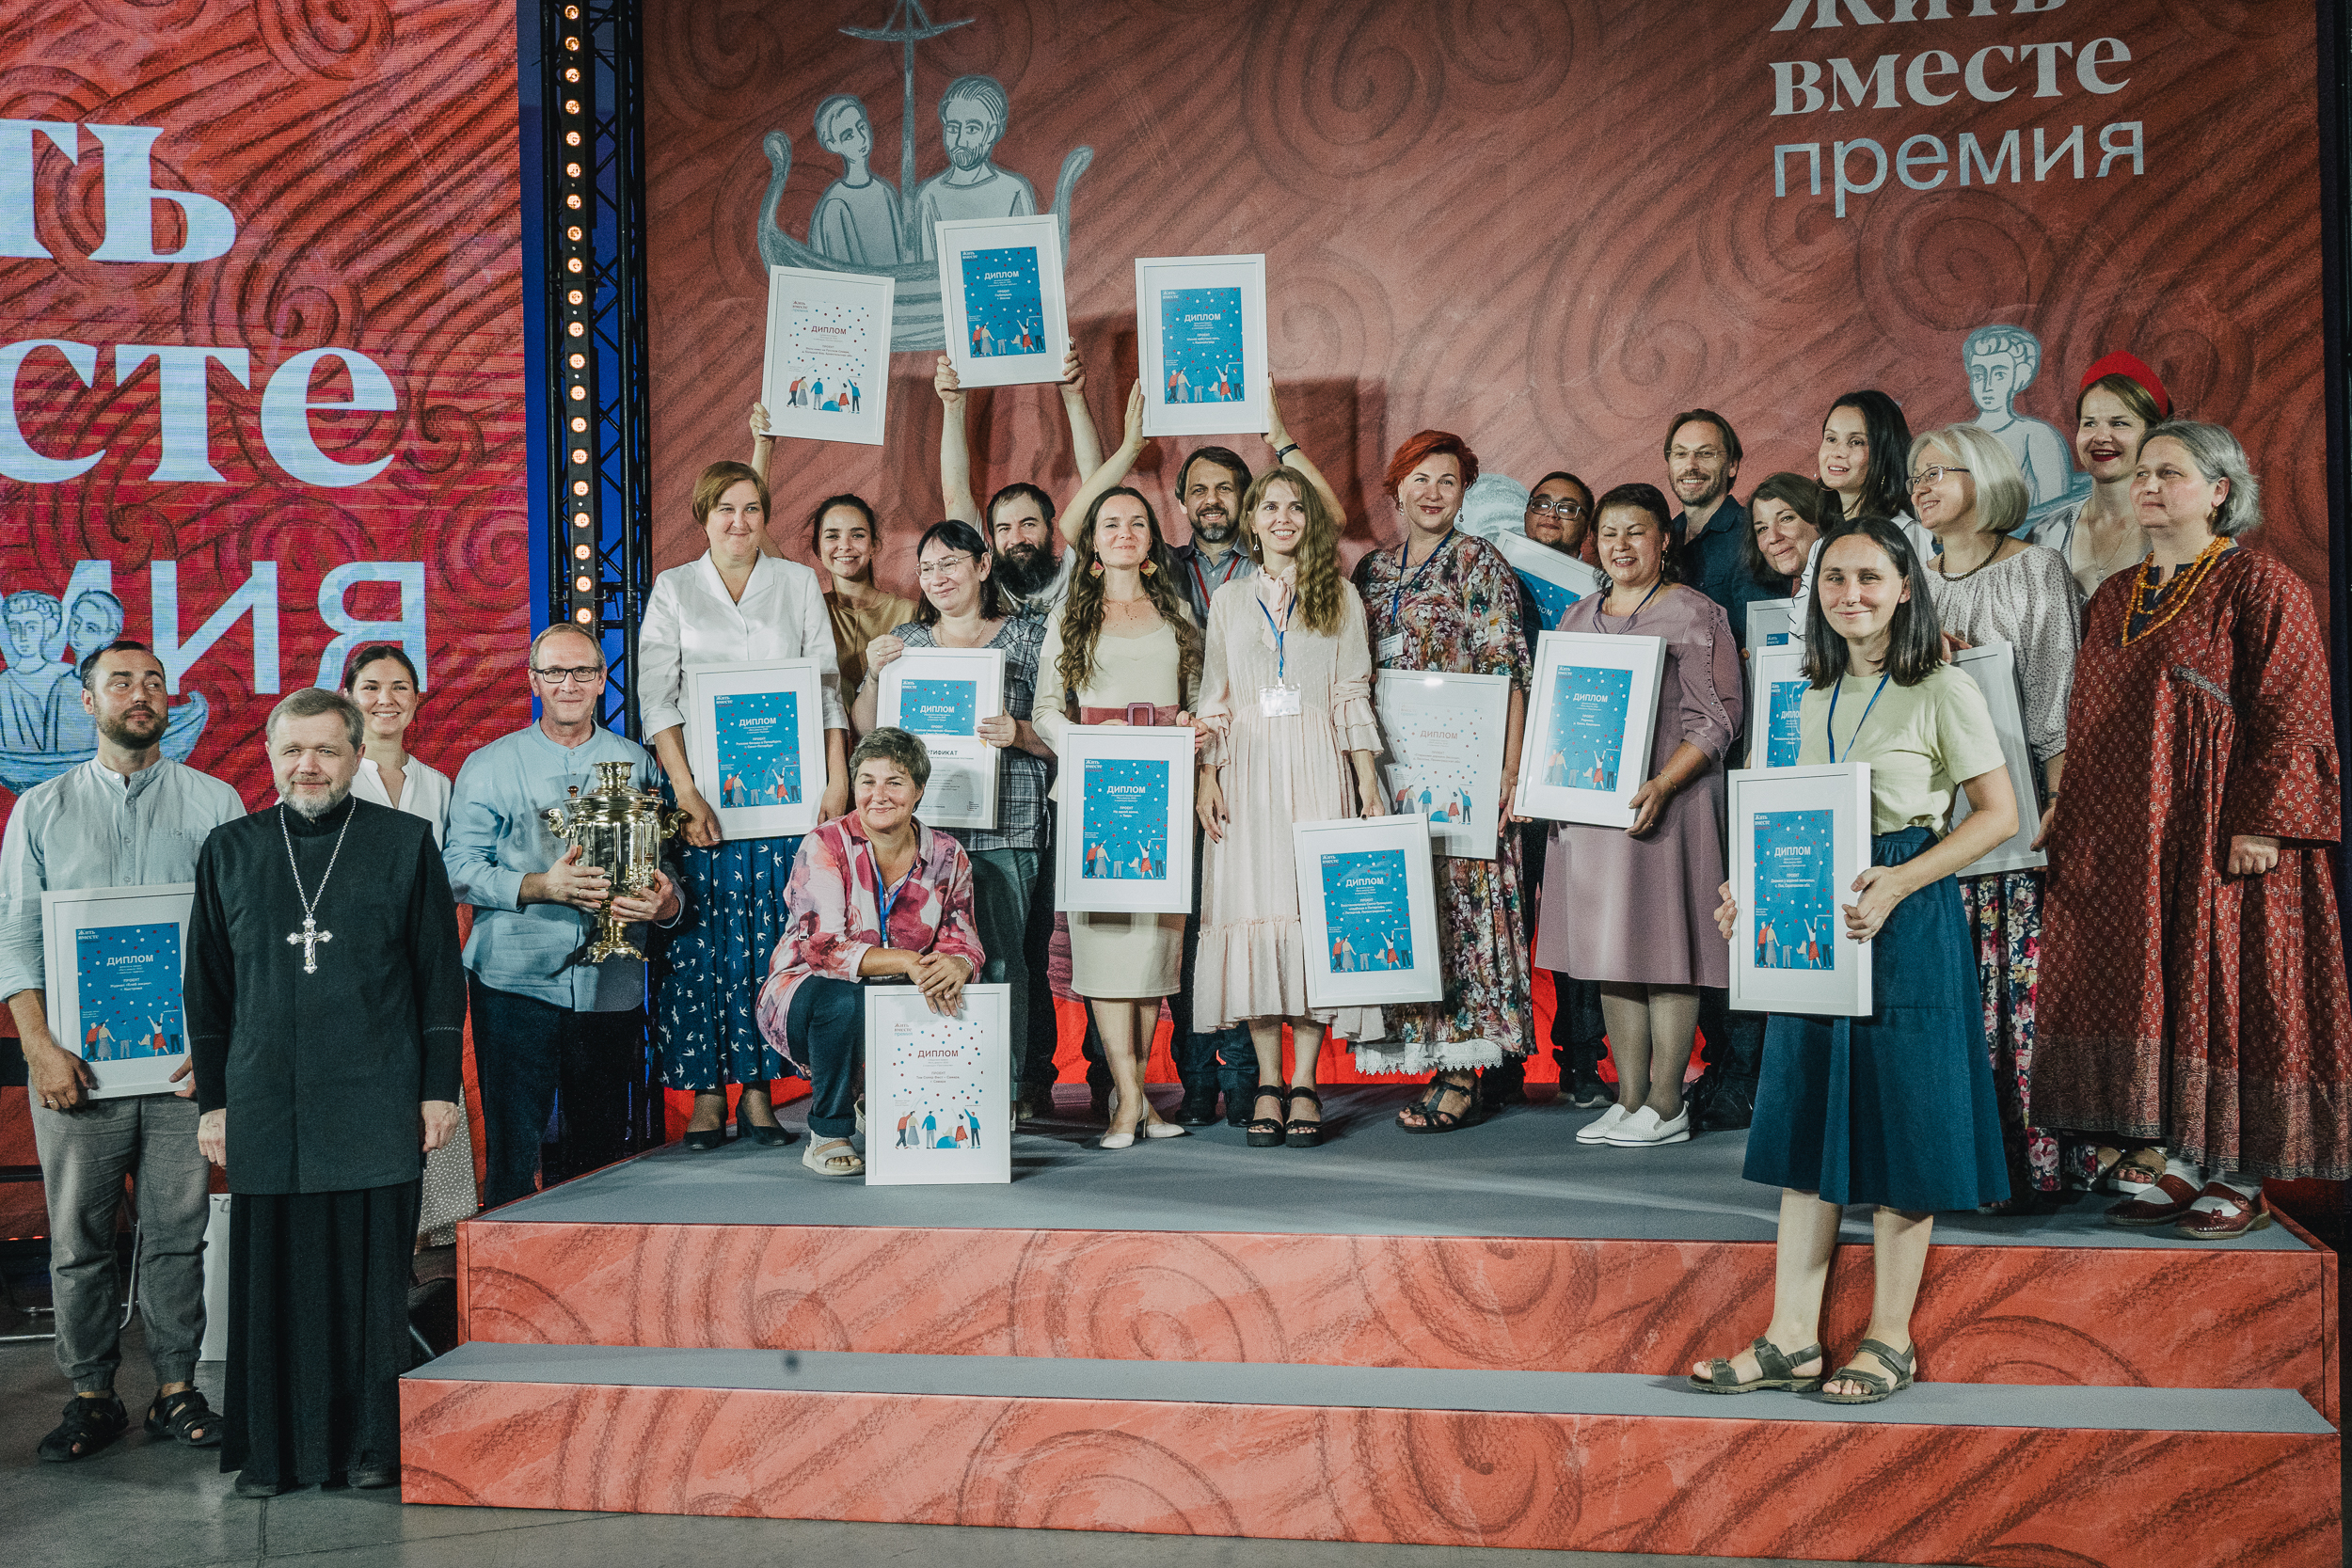 Жителей Кировской области приглашают принять участие в национальной премии &amp;quot;Жить вместе&amp;quot; и помогут составить заявку на мастер-классе 3 марта.